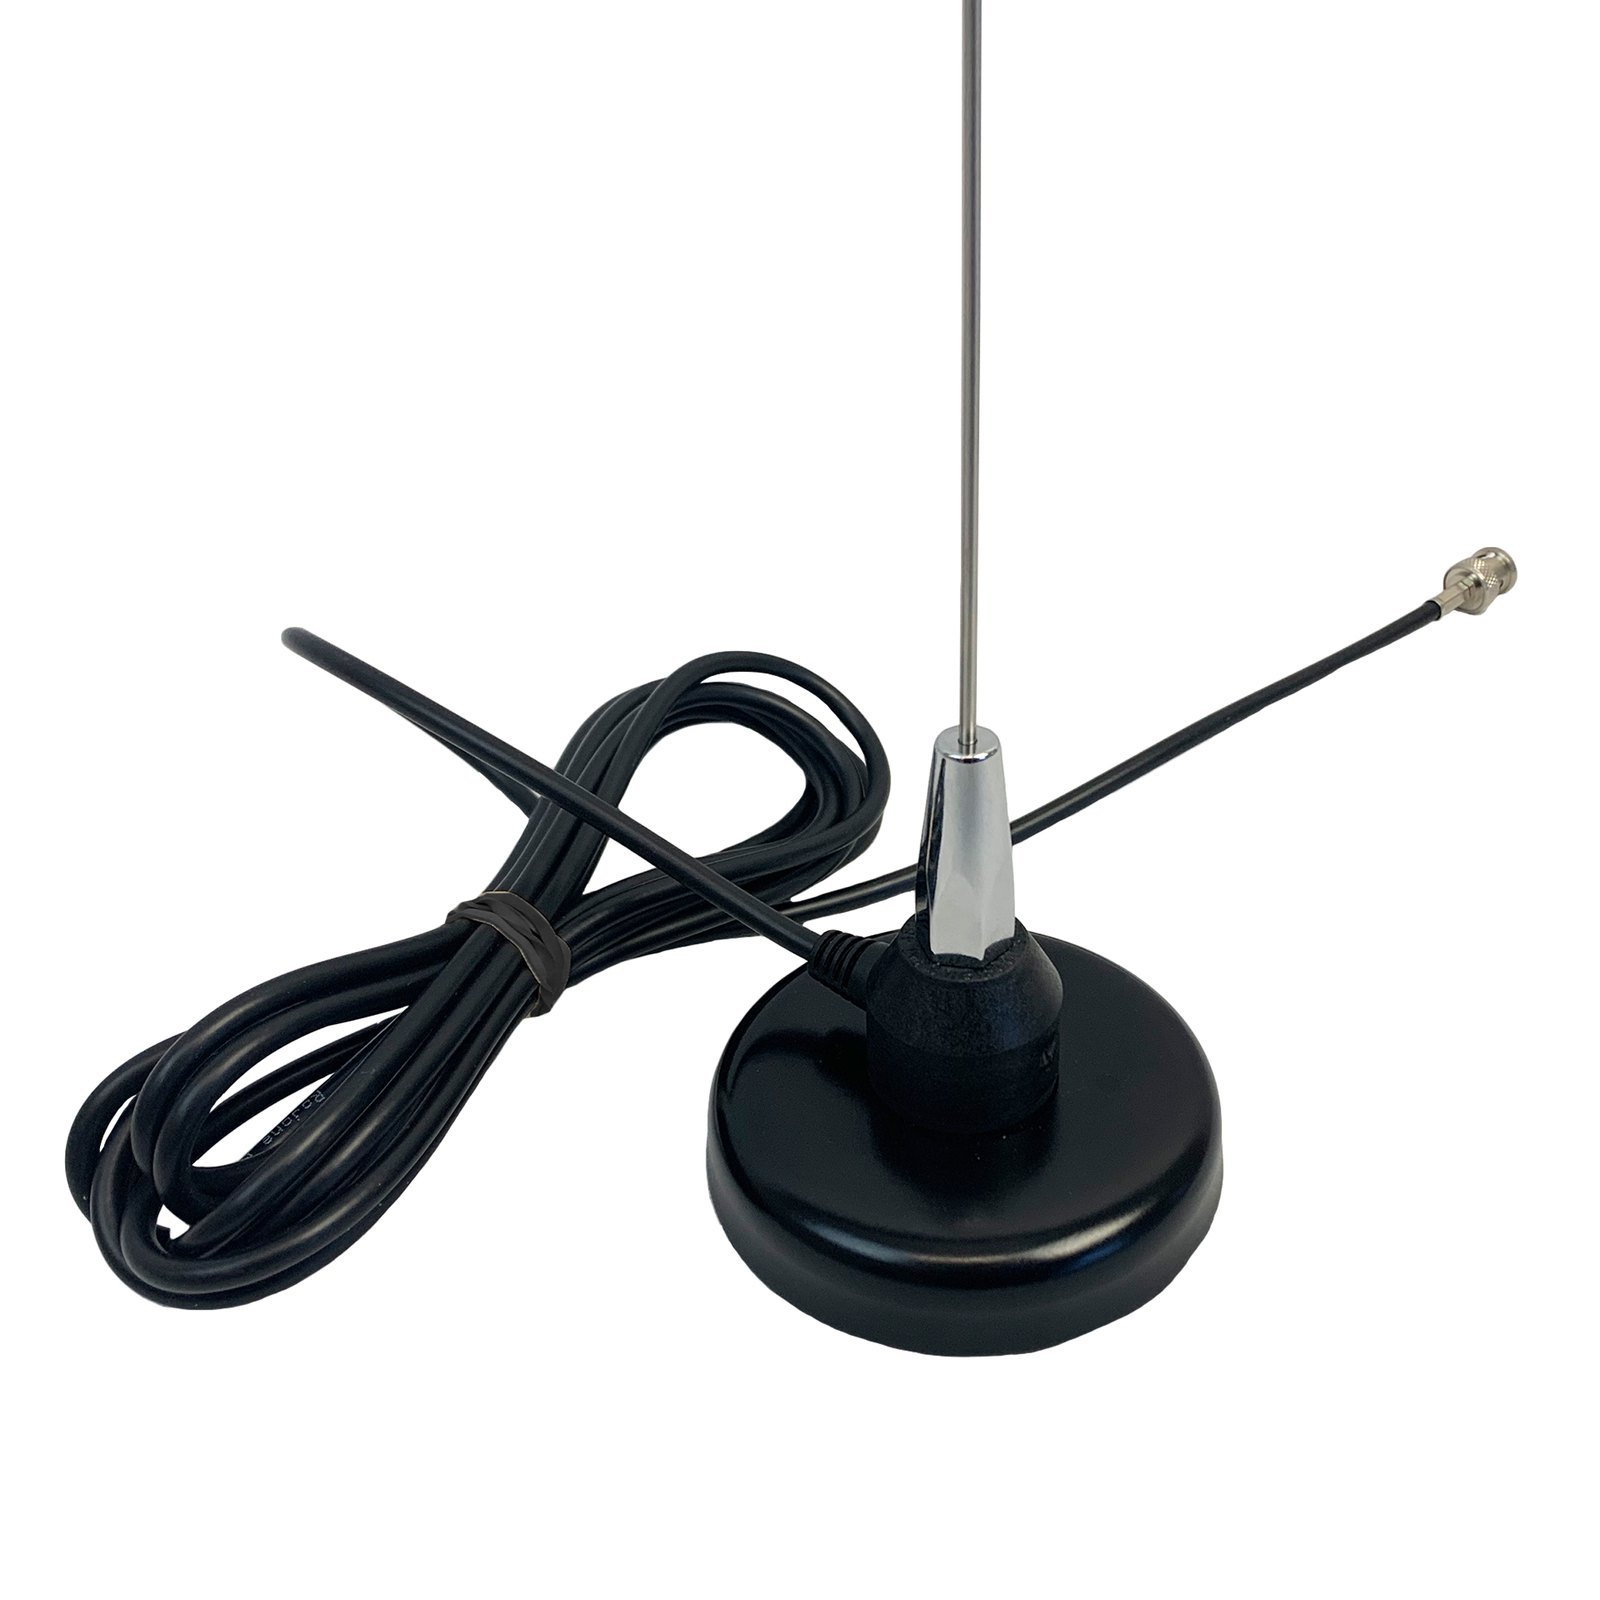 Whip Antenna - New York - New York ID1532460